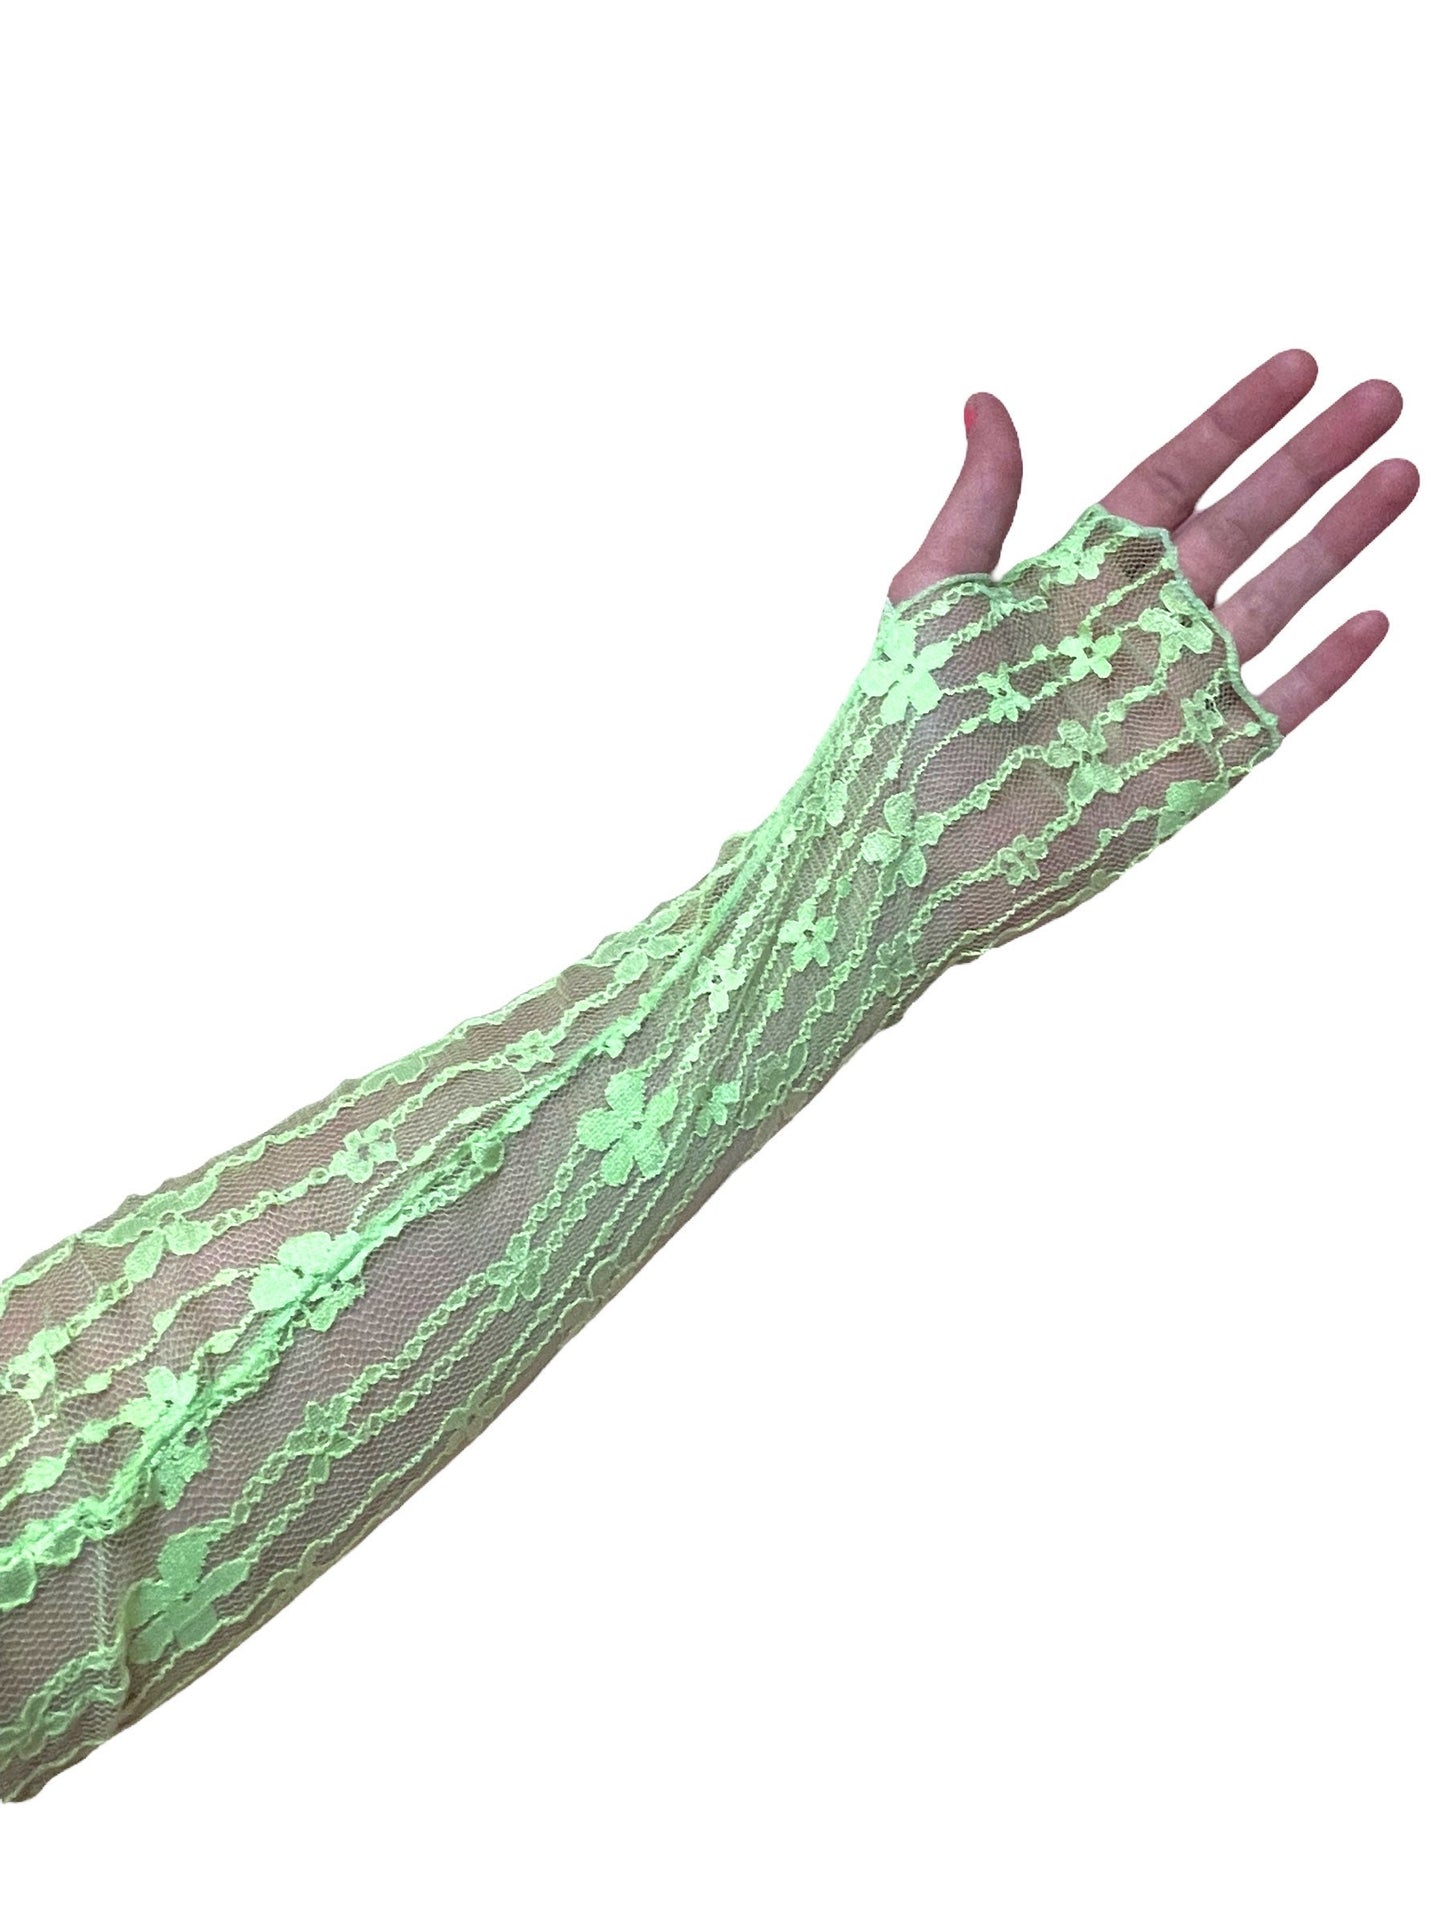 UV reactive arm sleeves, Neon flower pattern arm sleeves, Fluorescent mesh sleeves, Glow in the dark sleeves, Rave arm sleeves